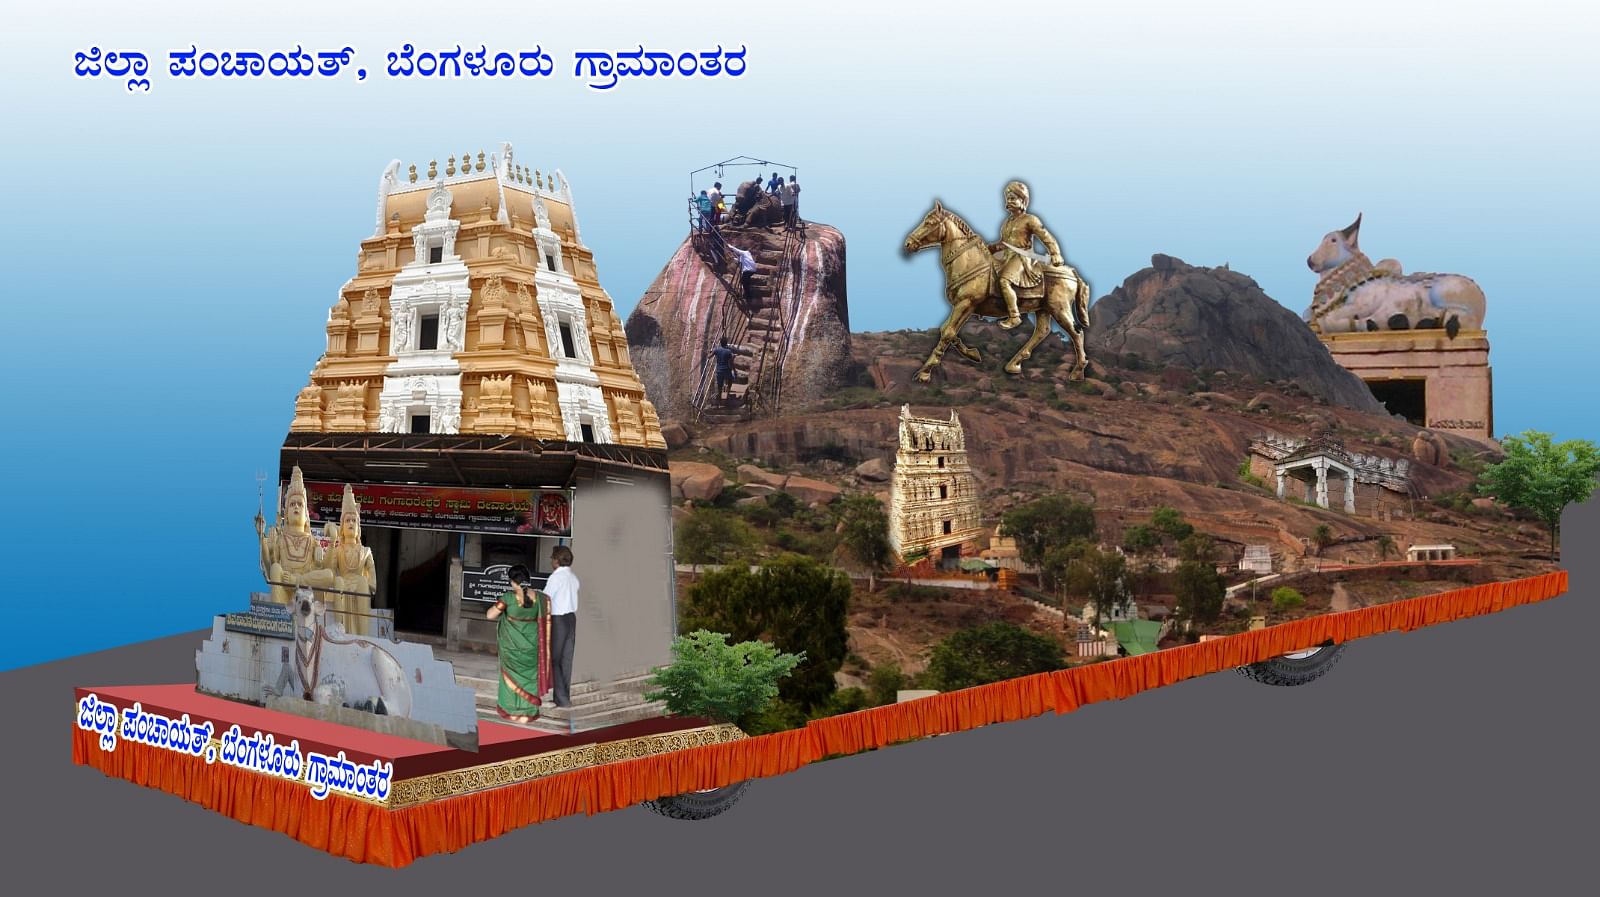 ನಾಡಹಬ್ಬದ ಸ್ತಬ್ಧಚಿತ್ರ ಪ್ರದರ್ಶನಕ್ಕೆ ಆಯ್ಕೆಯಾಗಿರುವ ಶಿವಗಂಗೆ ಕ್ಷೇತ್ರದ ಮಾದರಿ